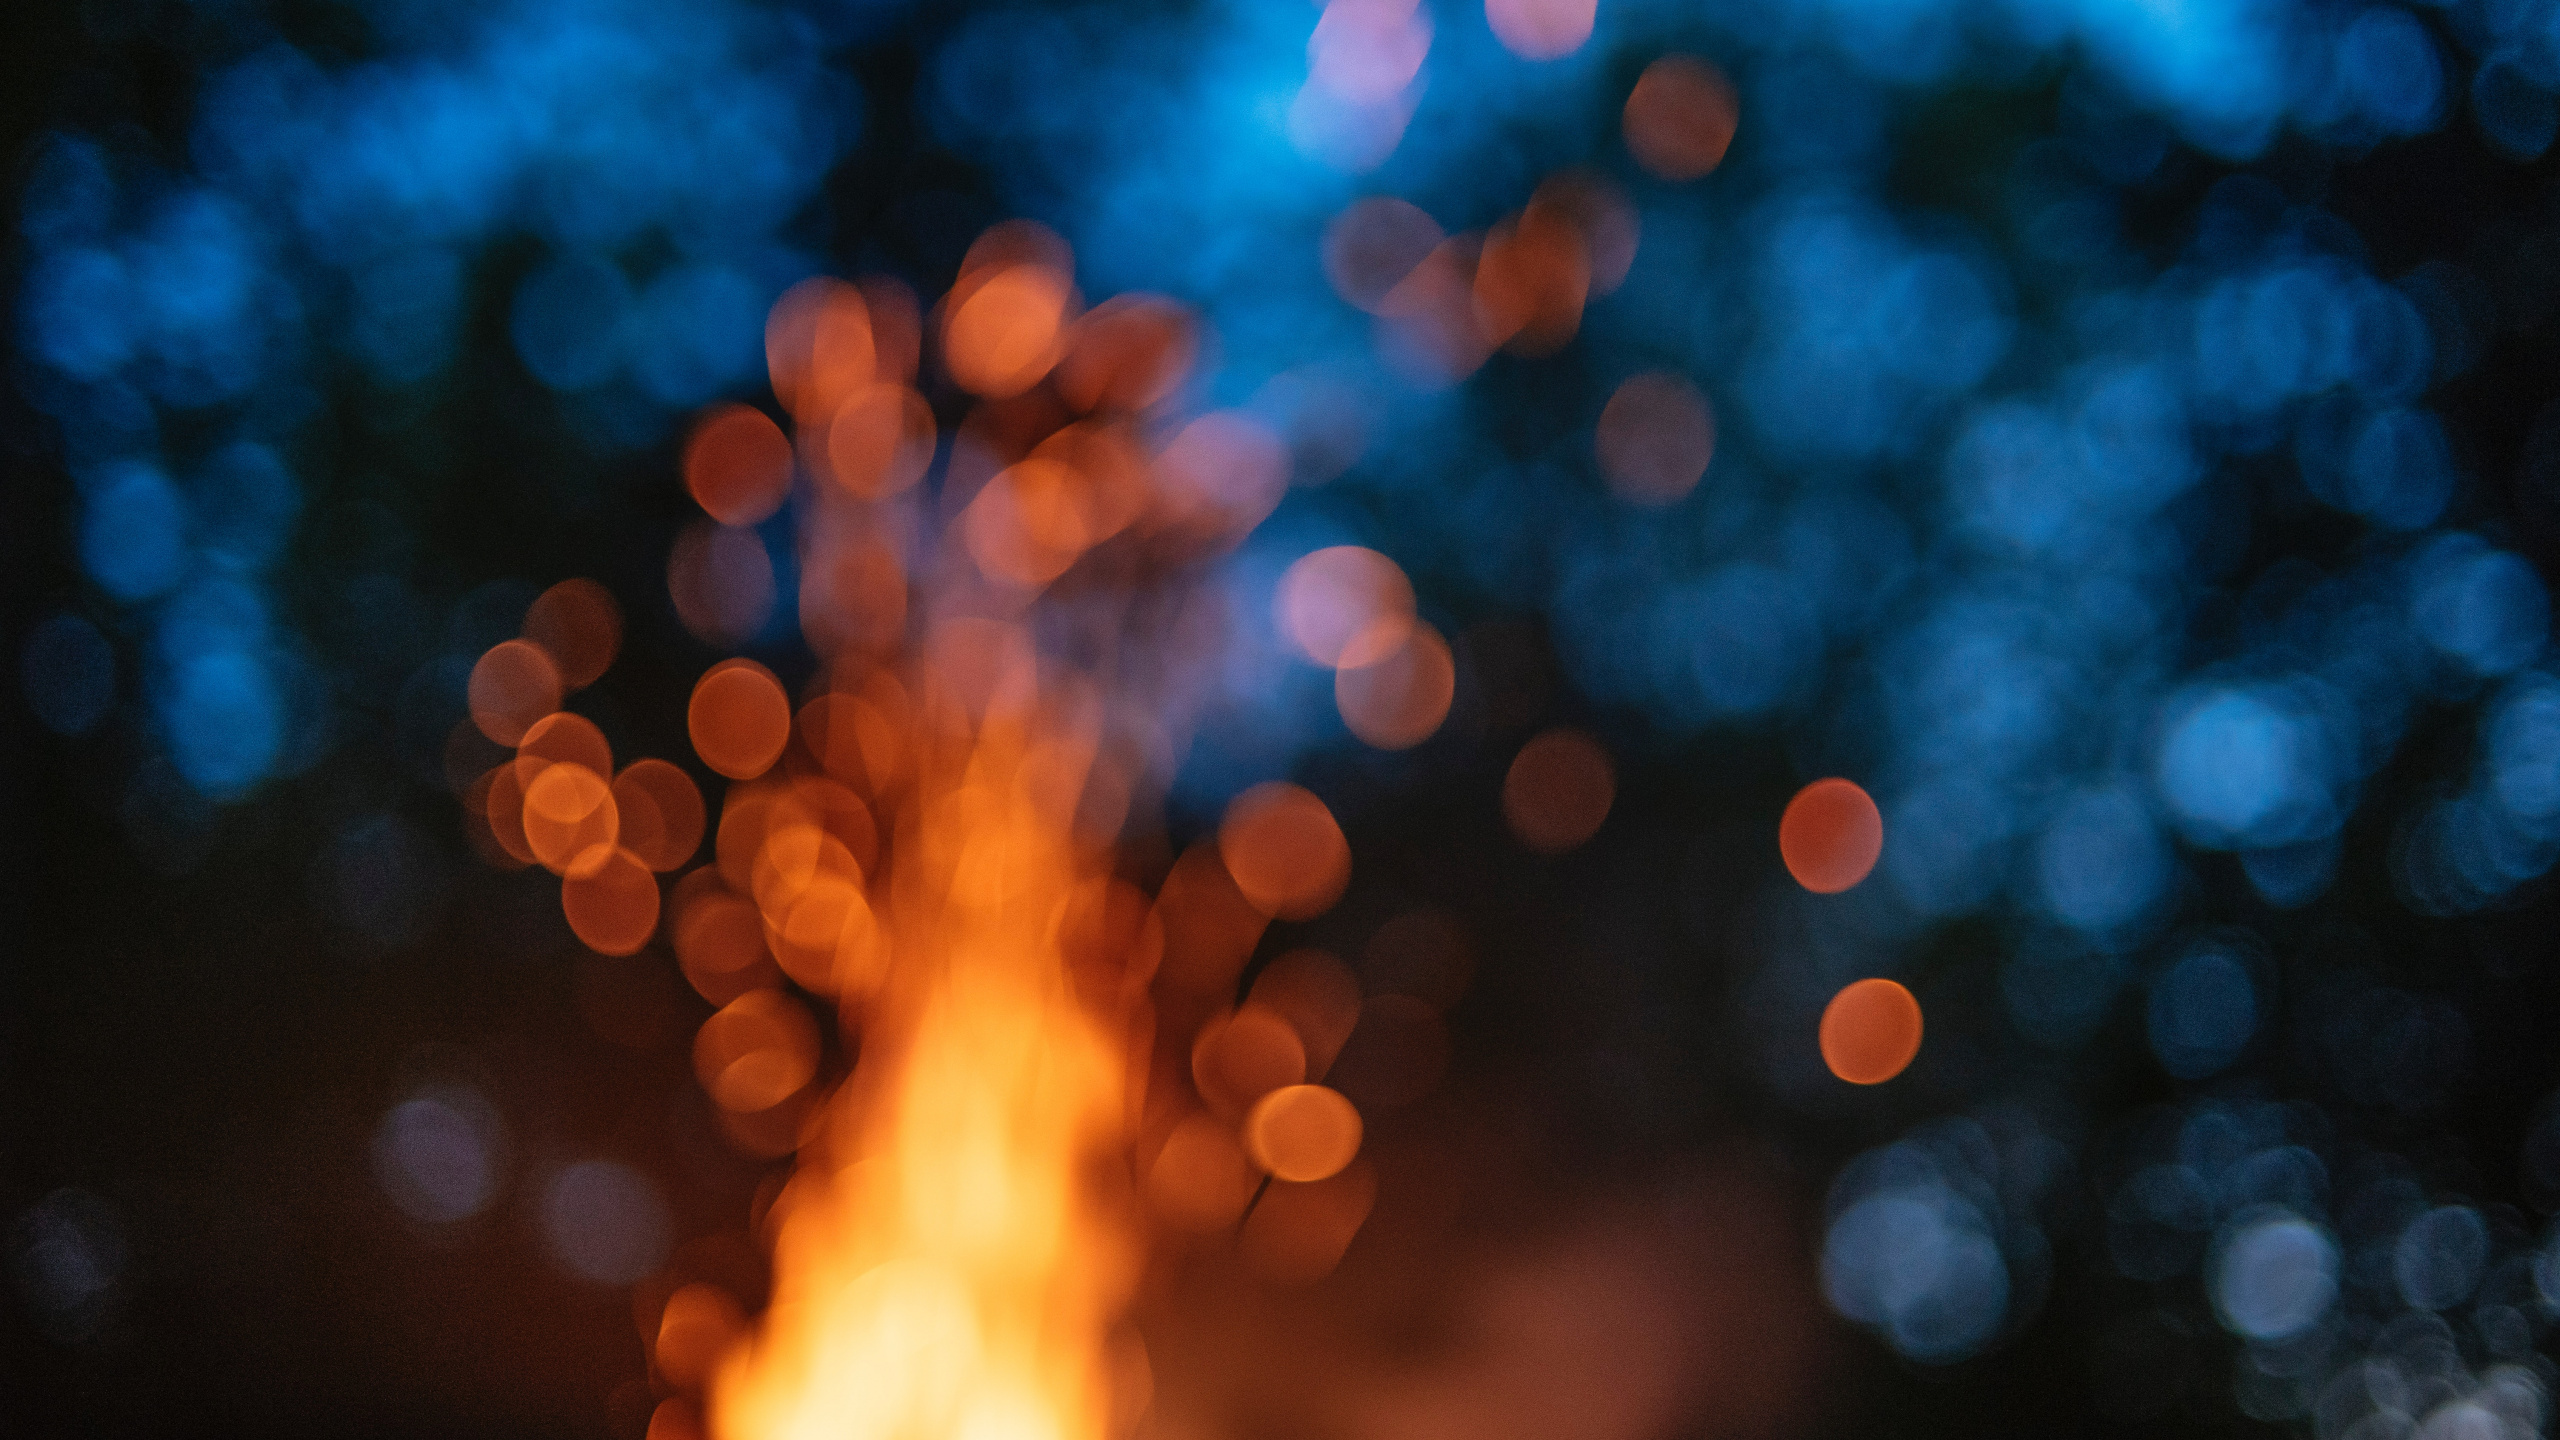 光, 热, 火焰, 天空, 篝火 壁纸 2560x1440 允许